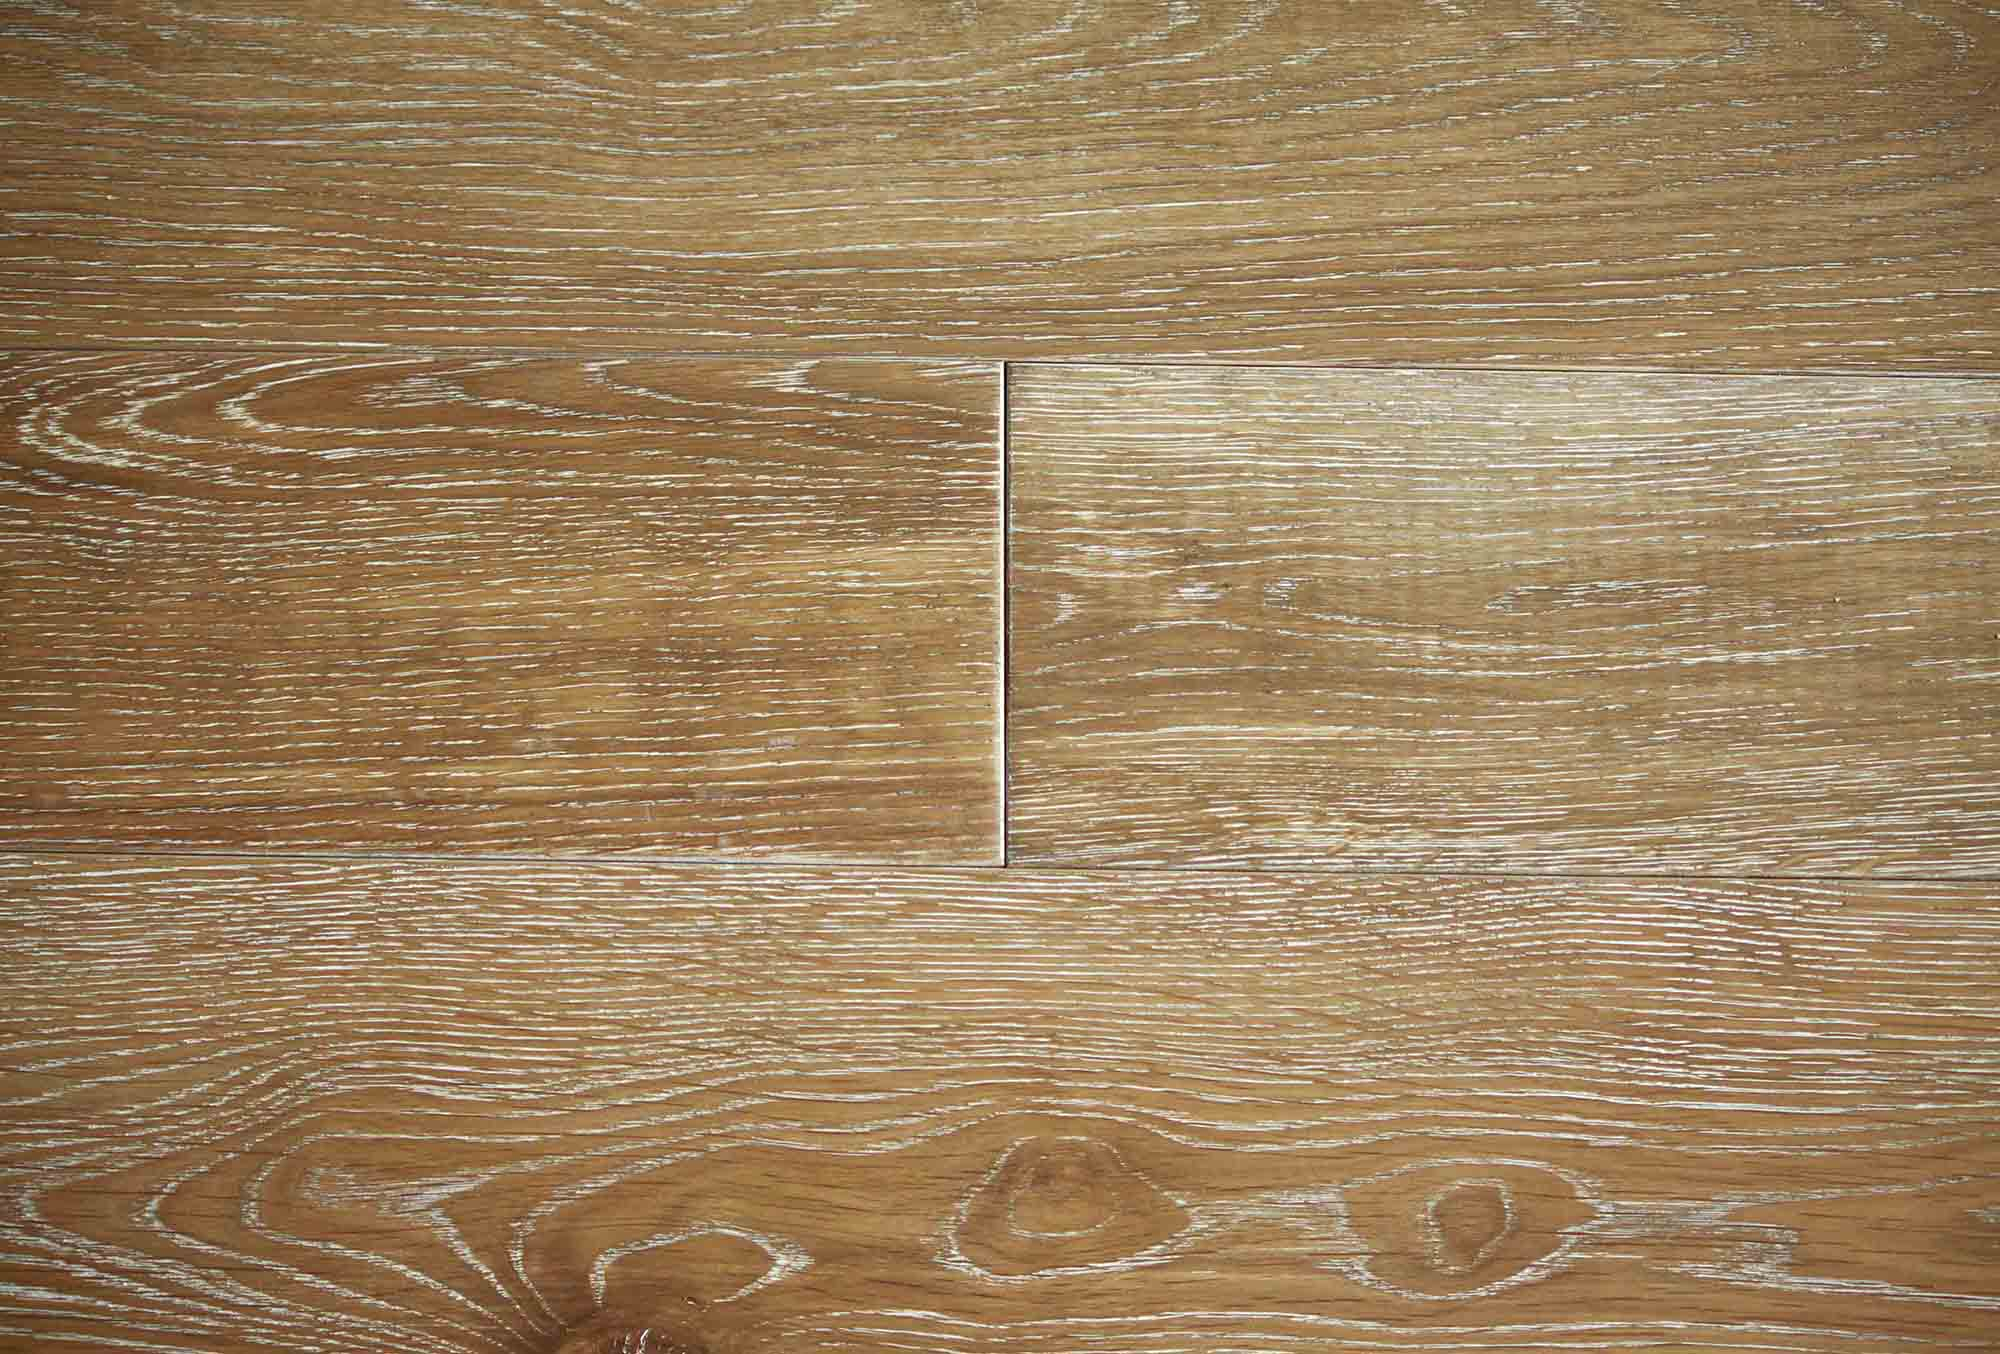 Sàn gỗ sồi kỹ thuật EHF901